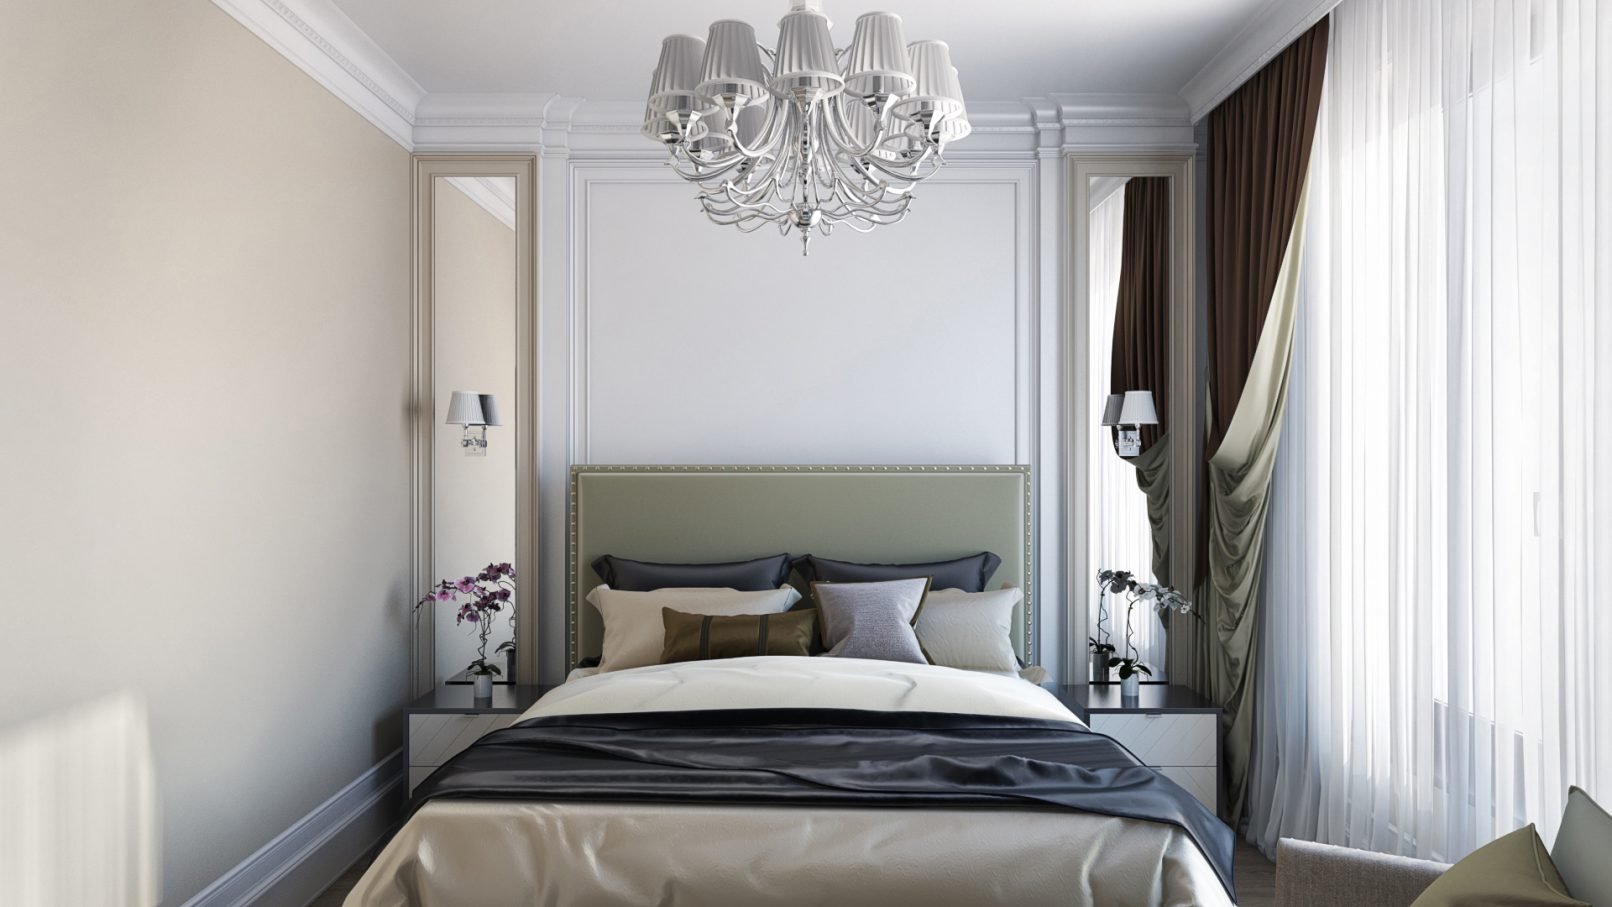 Спальня 9 кв. м.: фото дизайна самых современных идей для маленькой комнаты